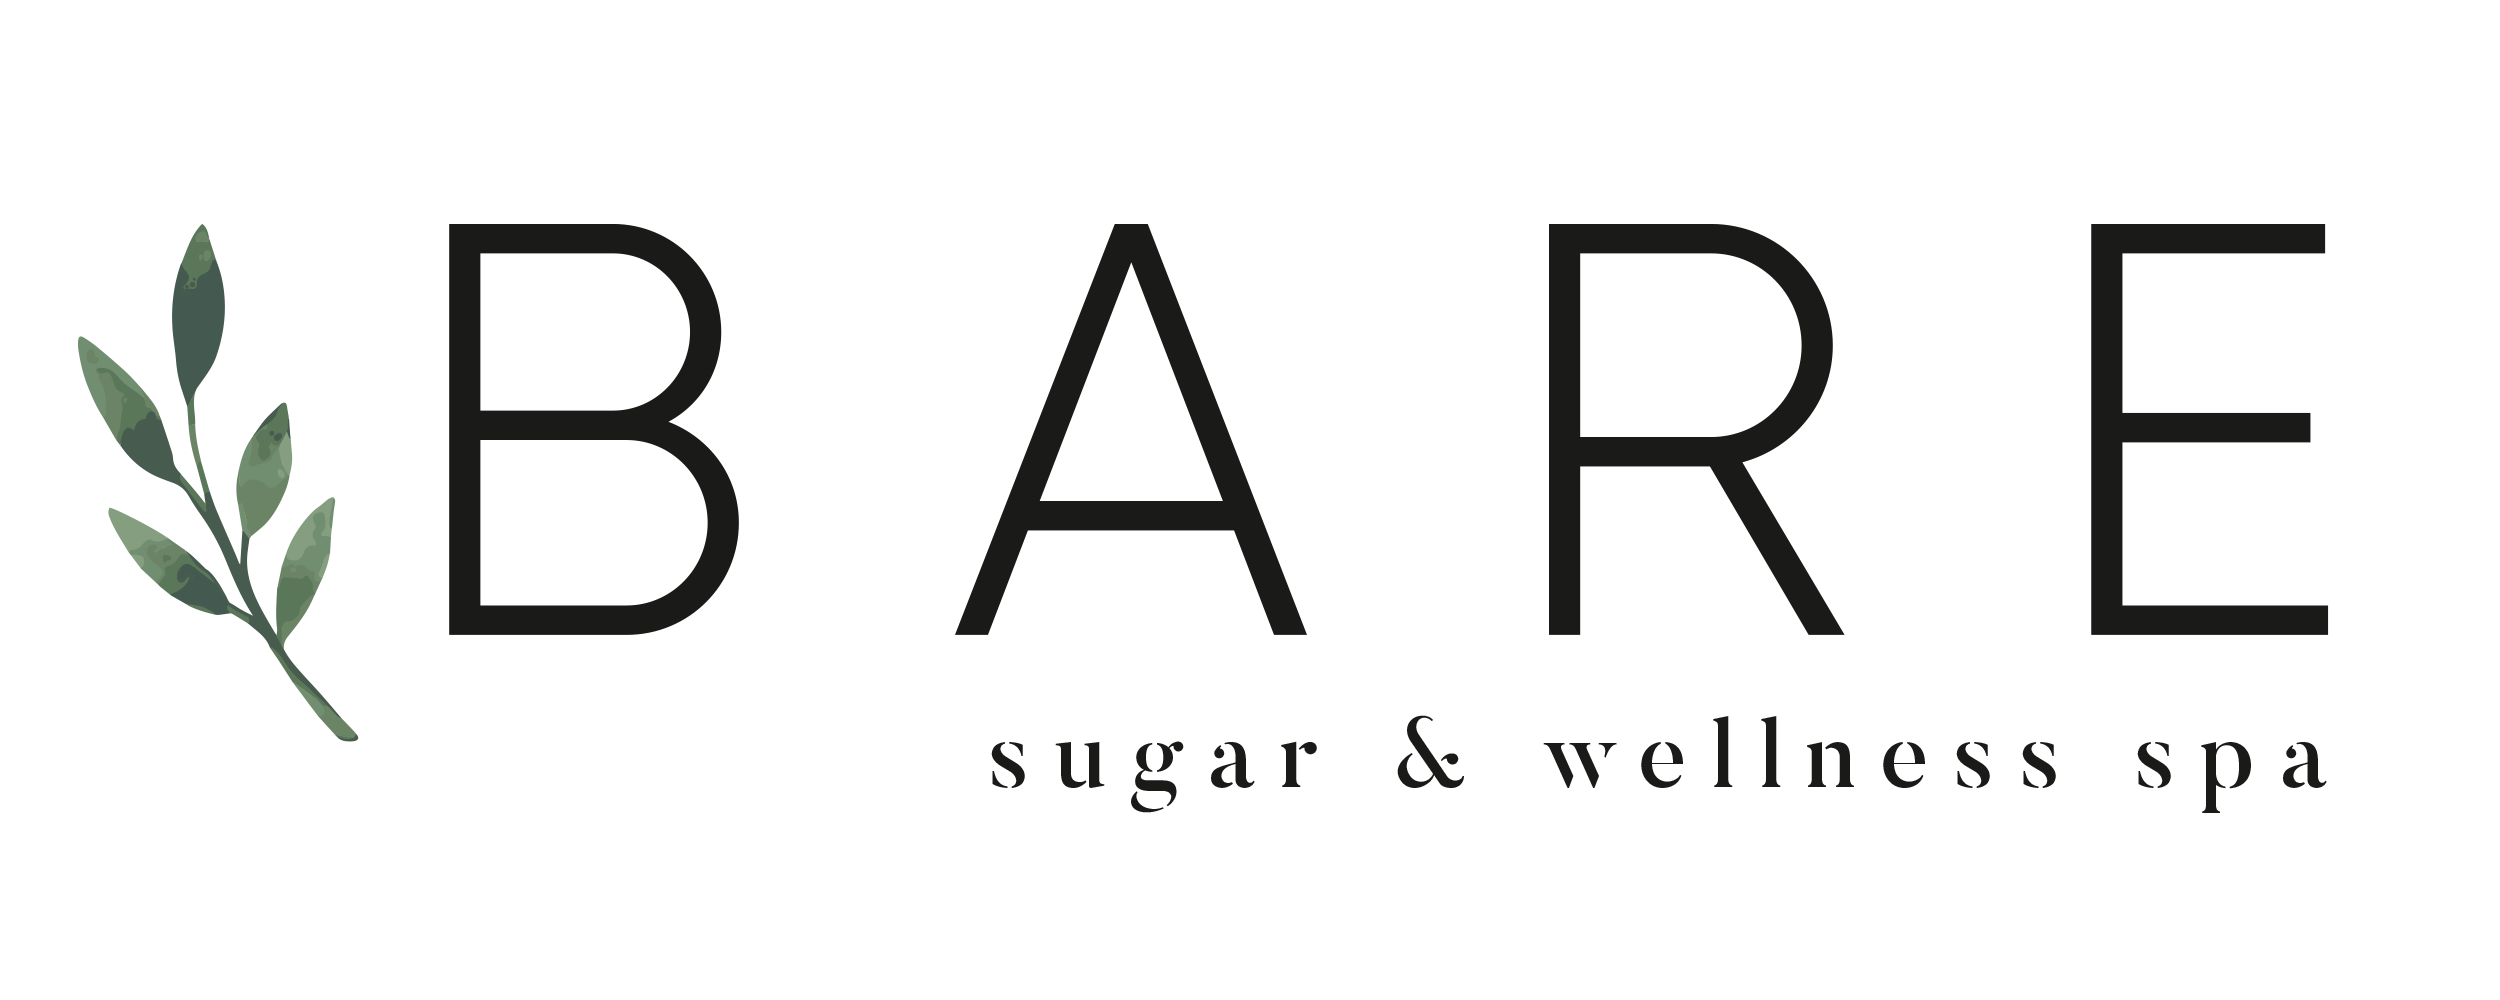 Bare Sugar &amp; Wellness Spa